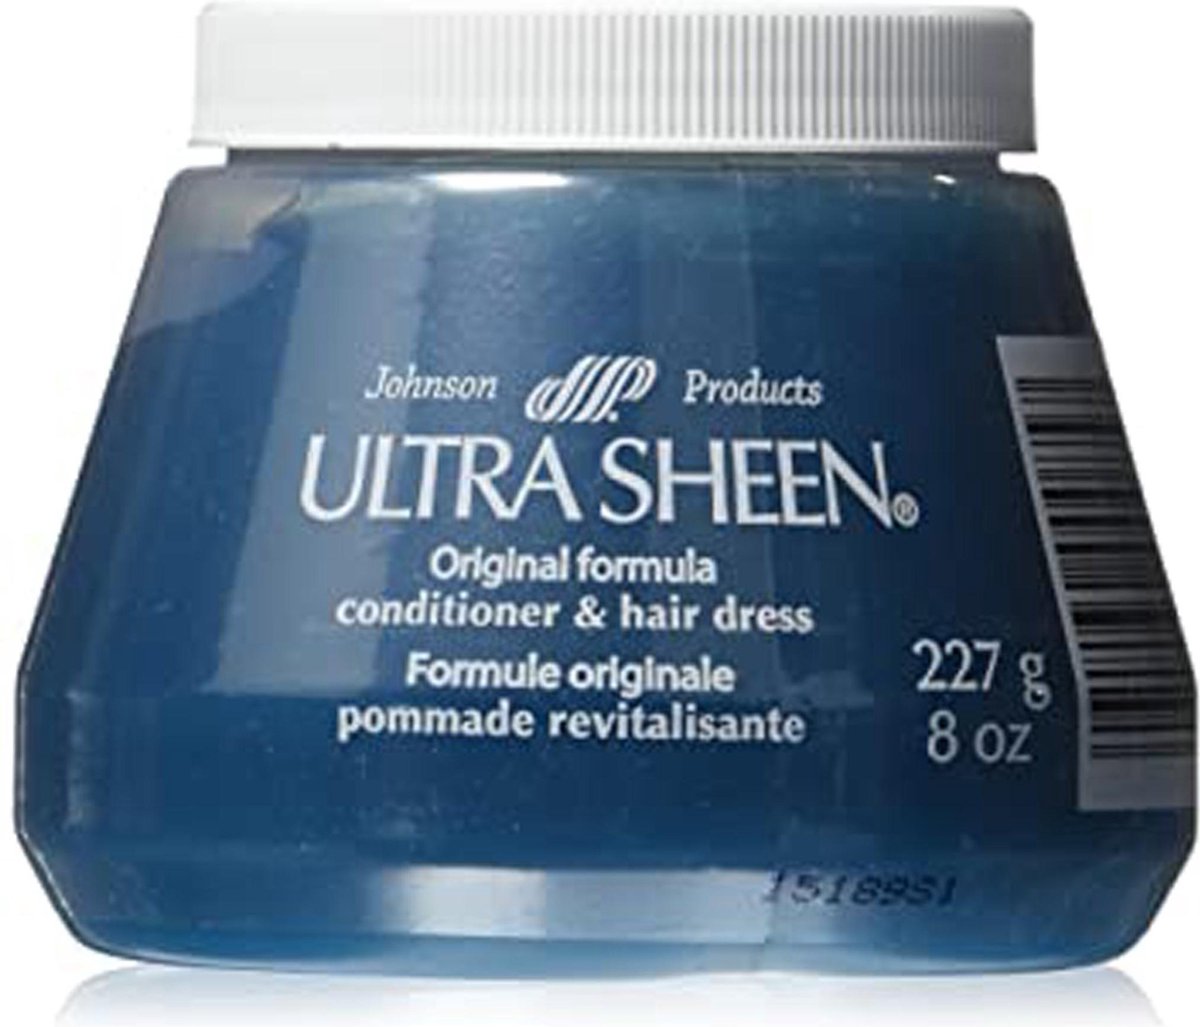 Ultra Sheen Conditioner & Hair Dress 227g